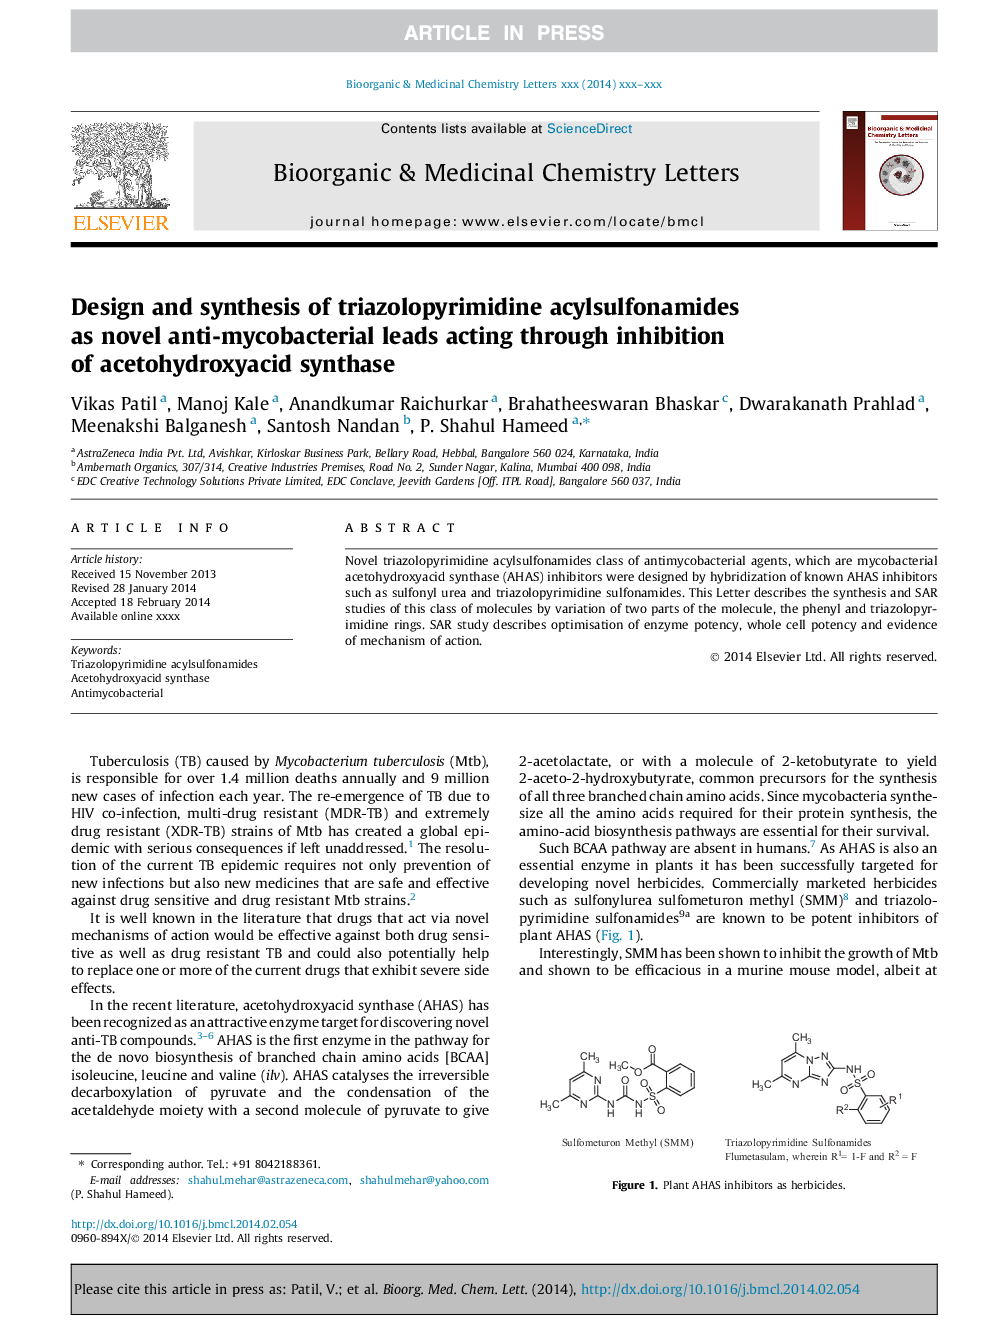 طراحی و ترکیب سدیم تیازولوپیریمیدین آکسیل سولفونامیدها به عنوان ضد میکروسکوپیک جدید منجر به مهار استاتید هیدروکسی اکسید سنتاز 